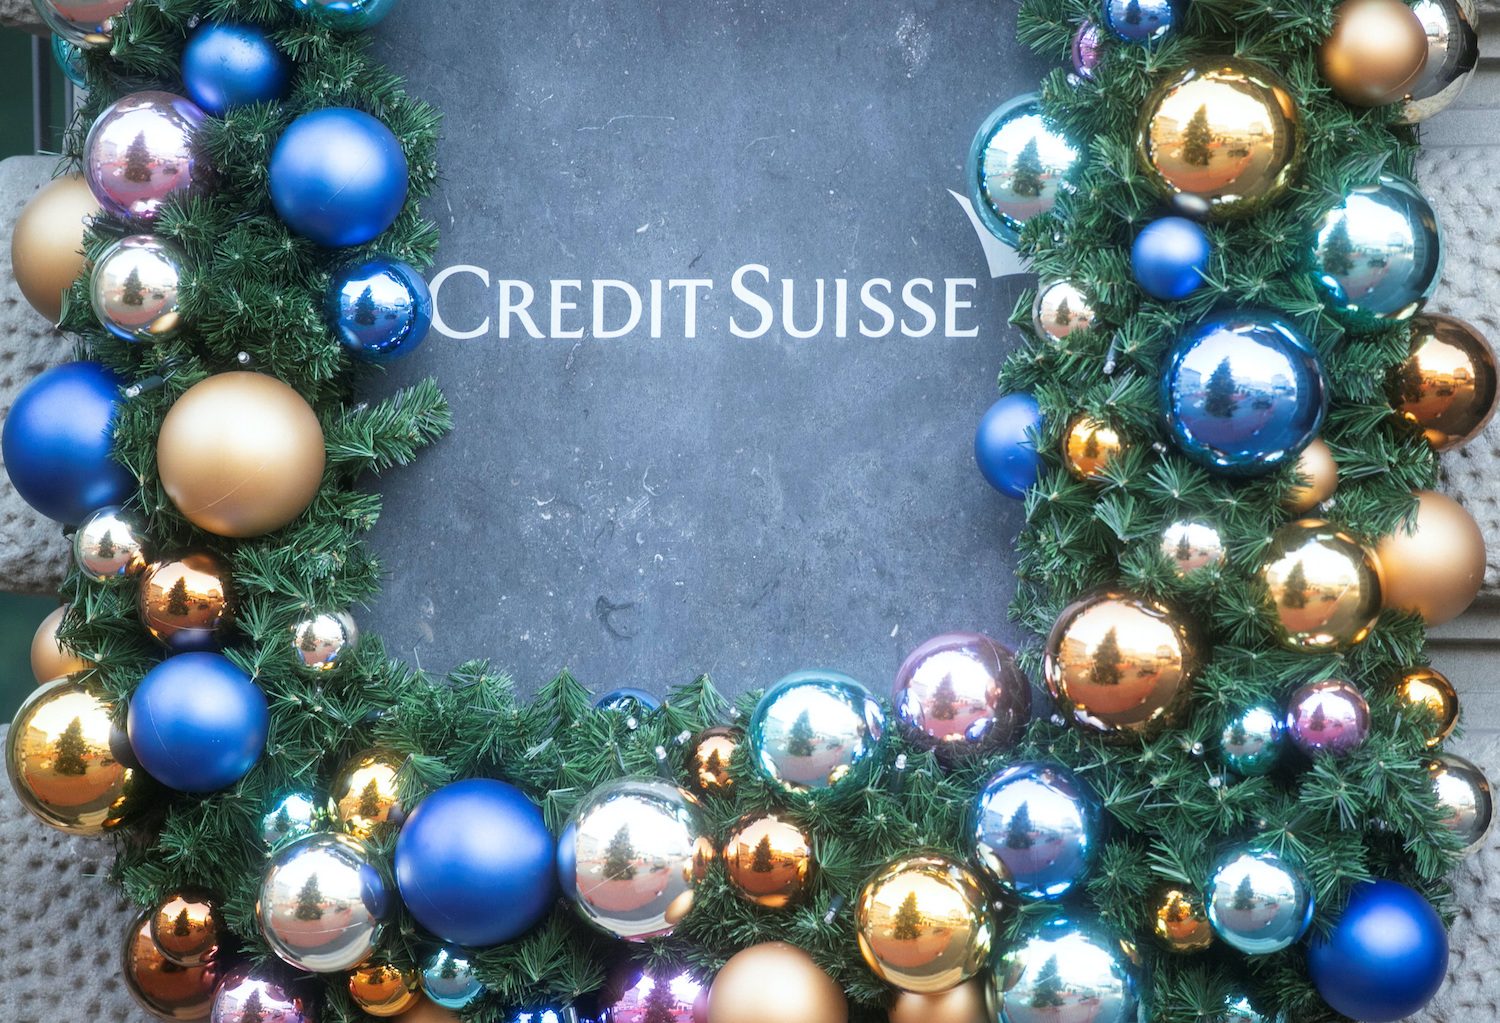 Credit Suisse raises ‘milestone’ $2.4 billion in revamp cash call